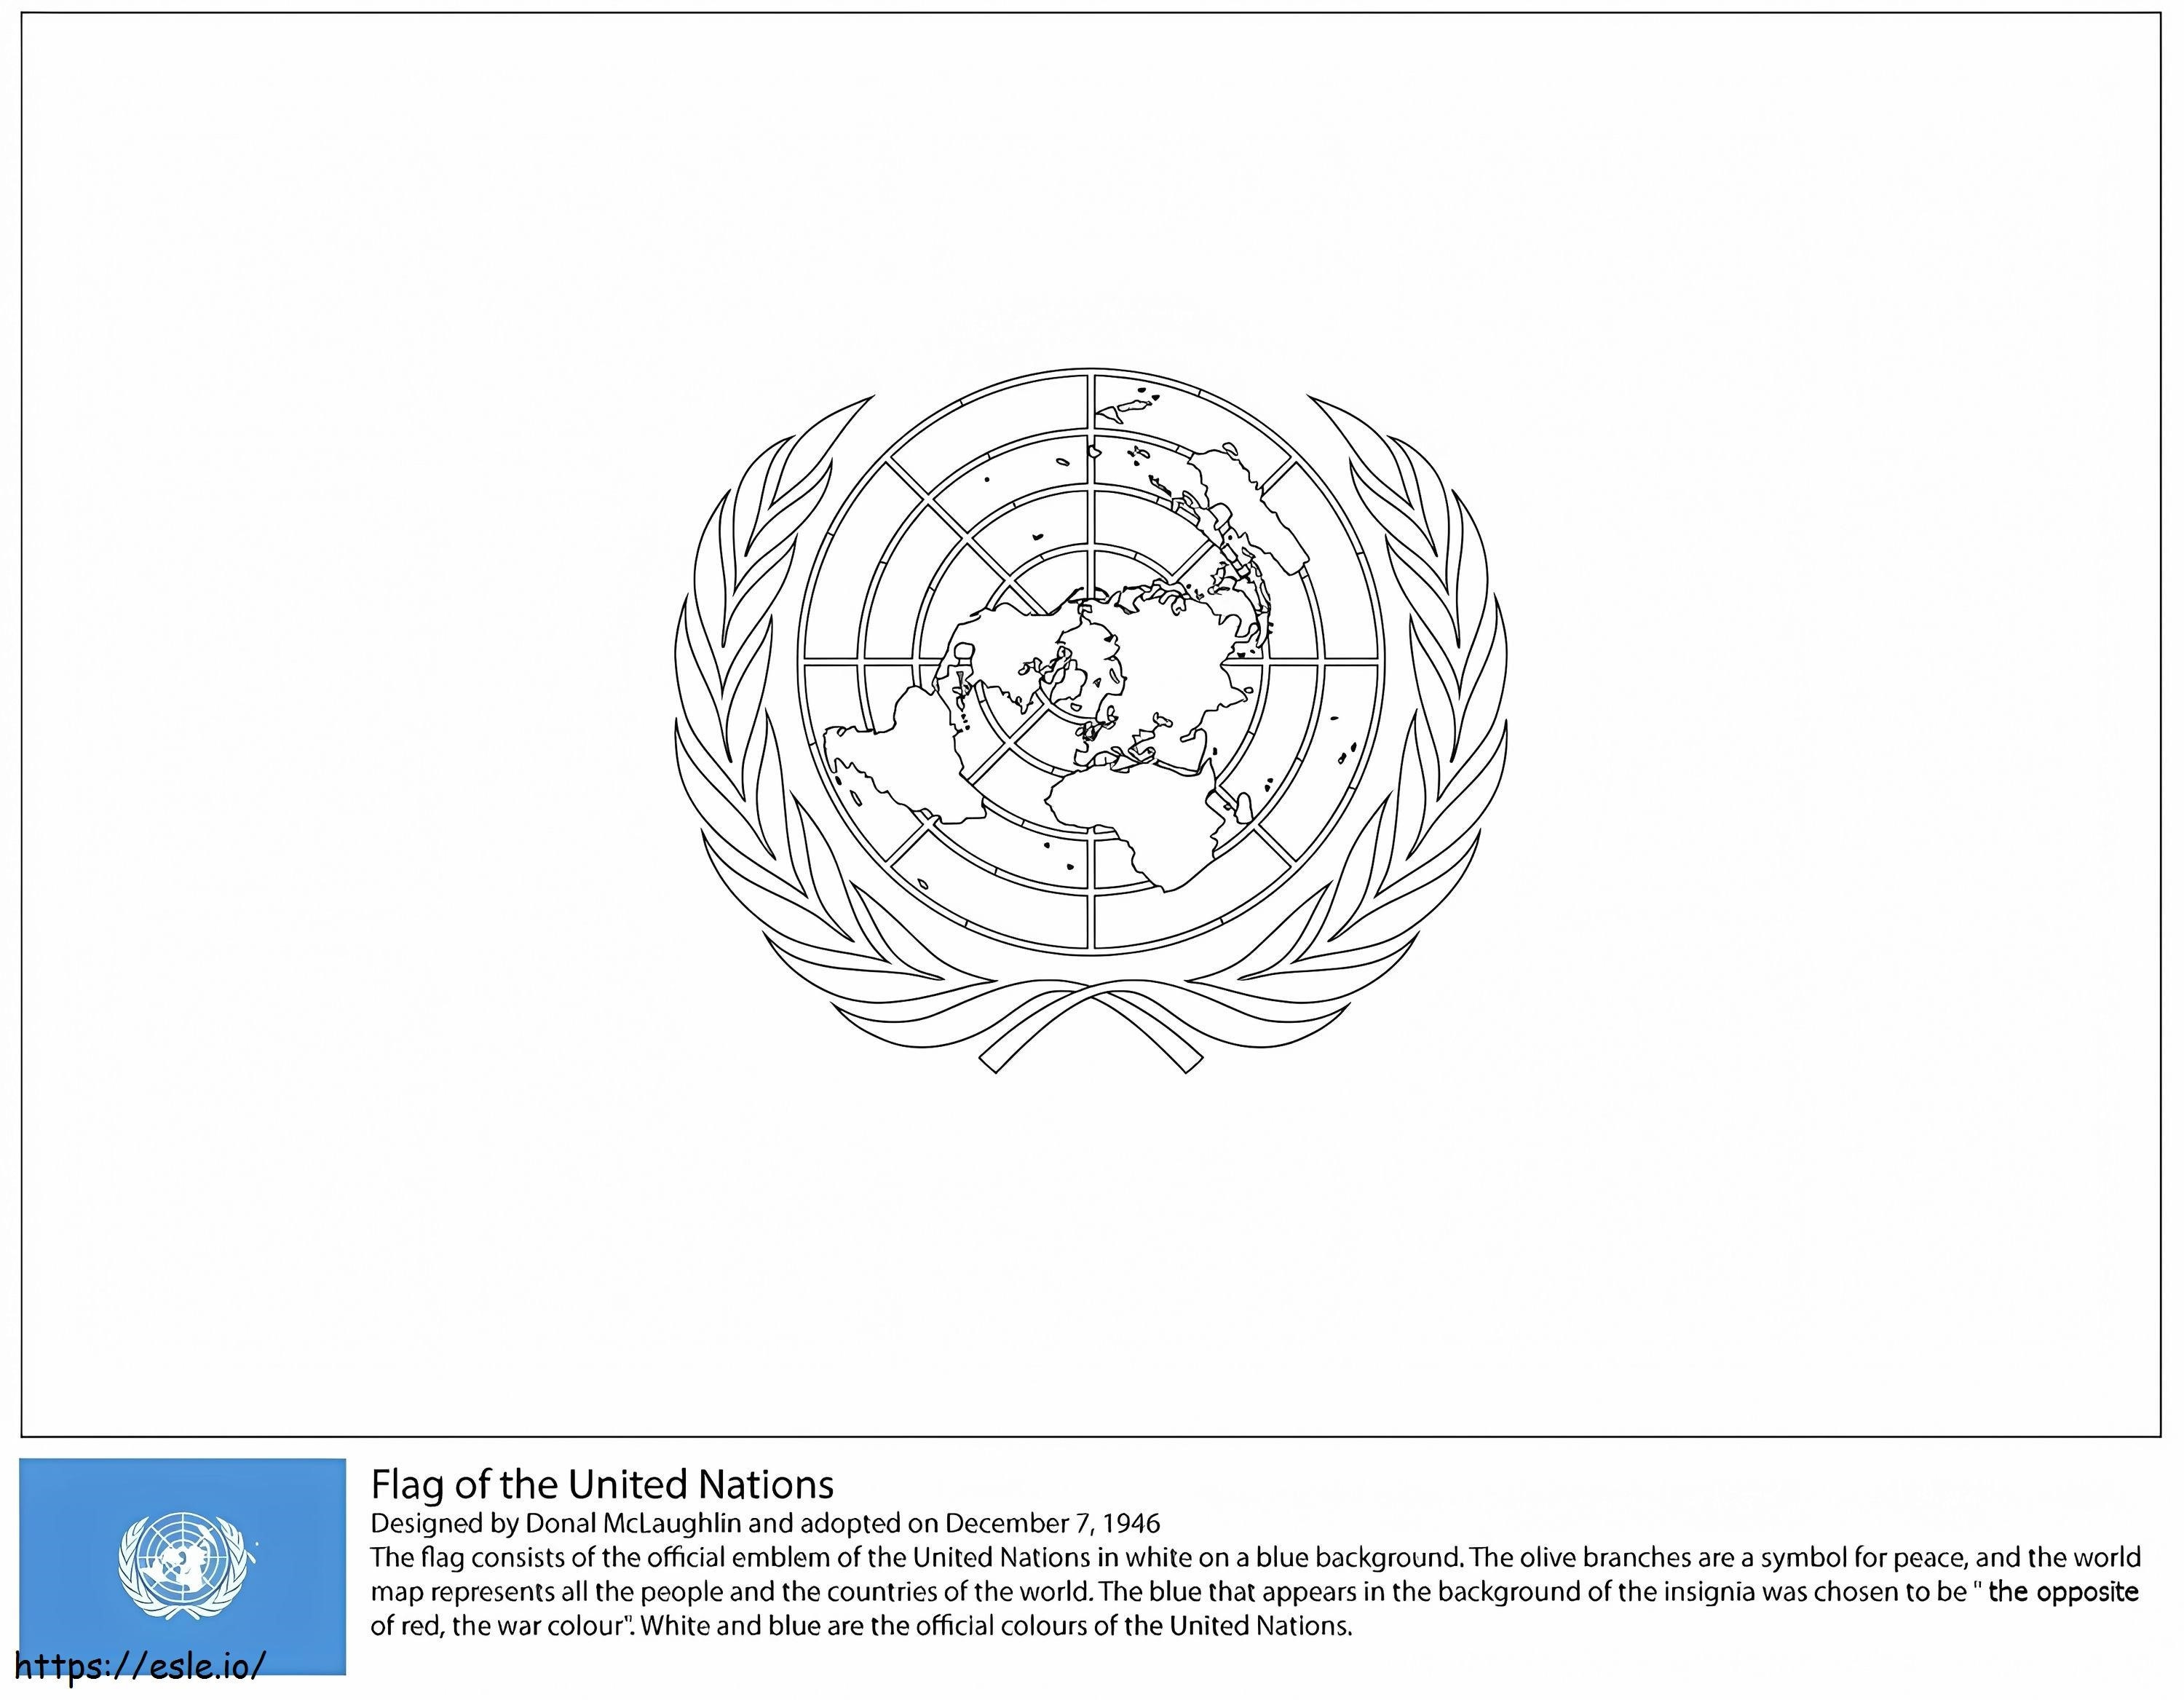  Flagge der Vereinten Nationen ausmalbilder